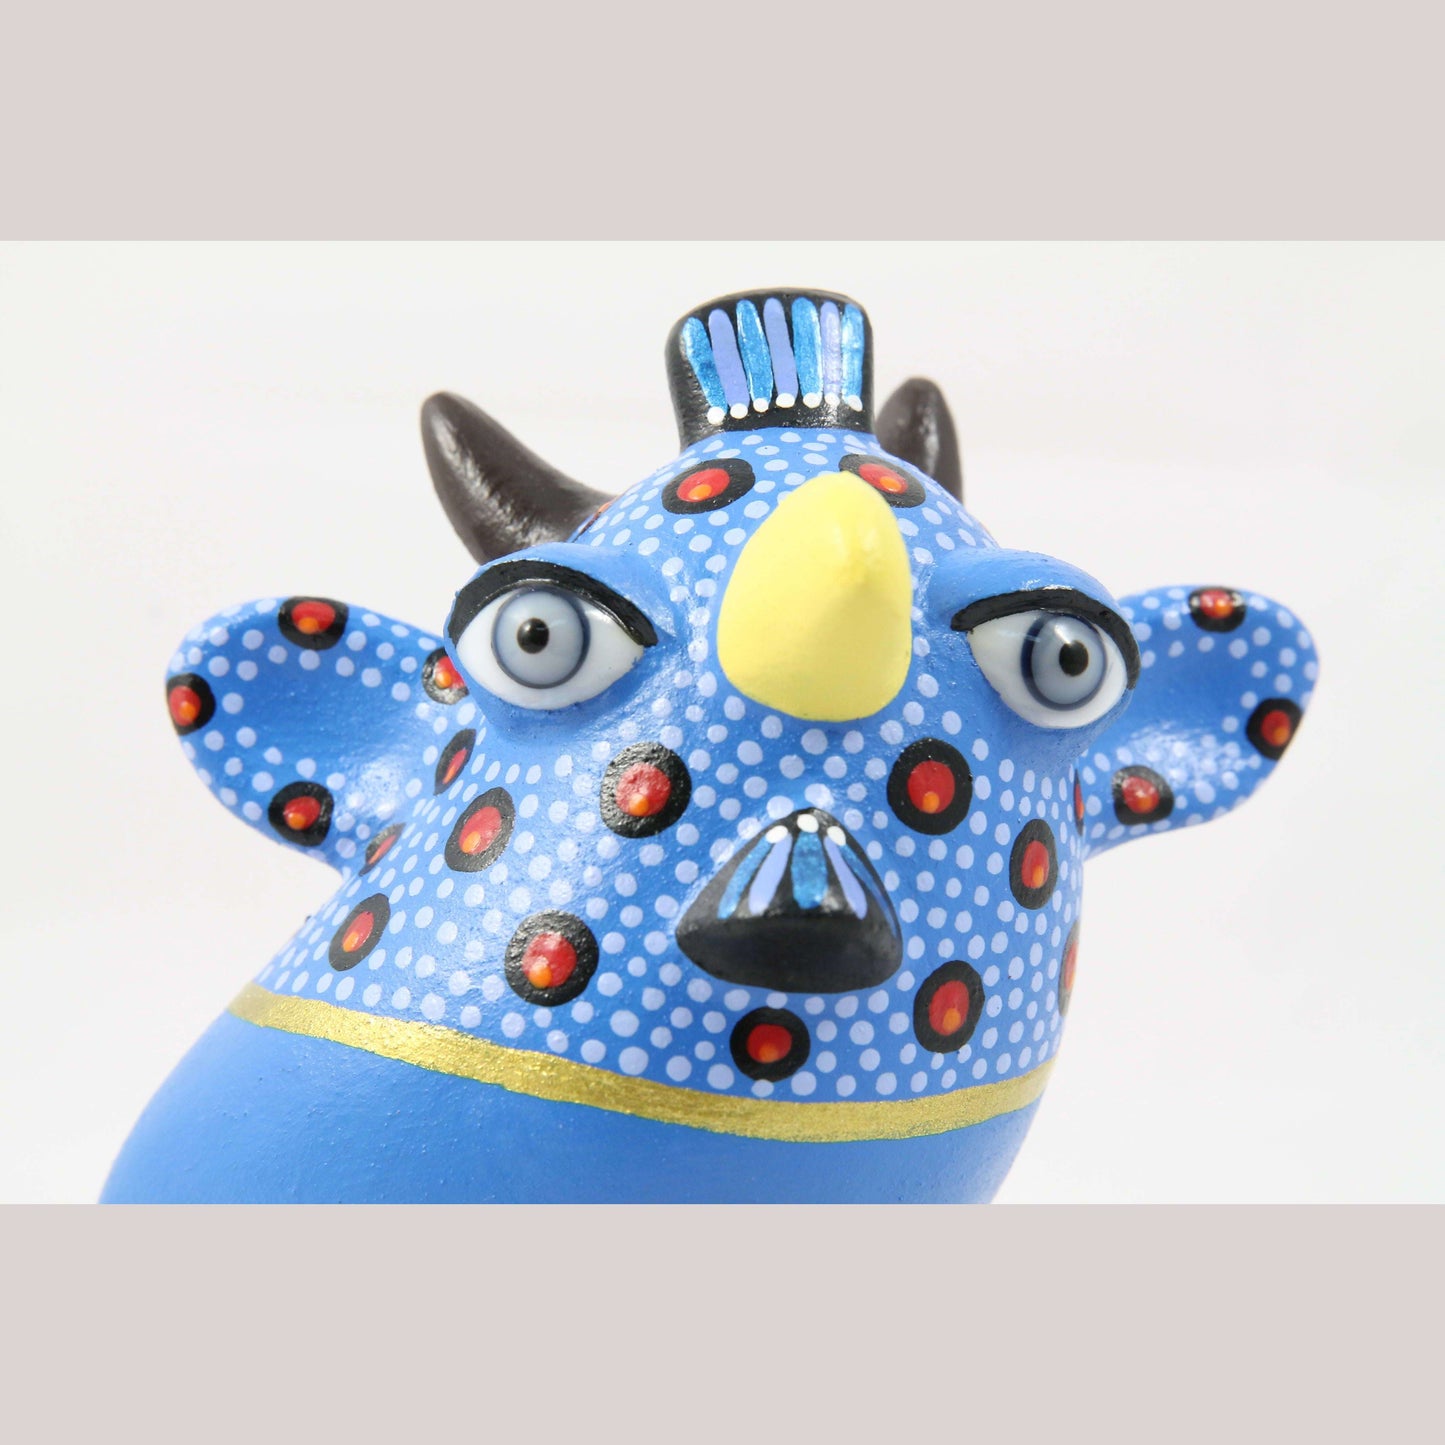 Fantasy Nagual Ceramic Bird Mexico Hand Made Folk Art Signed Tonala Blue Eyes #2